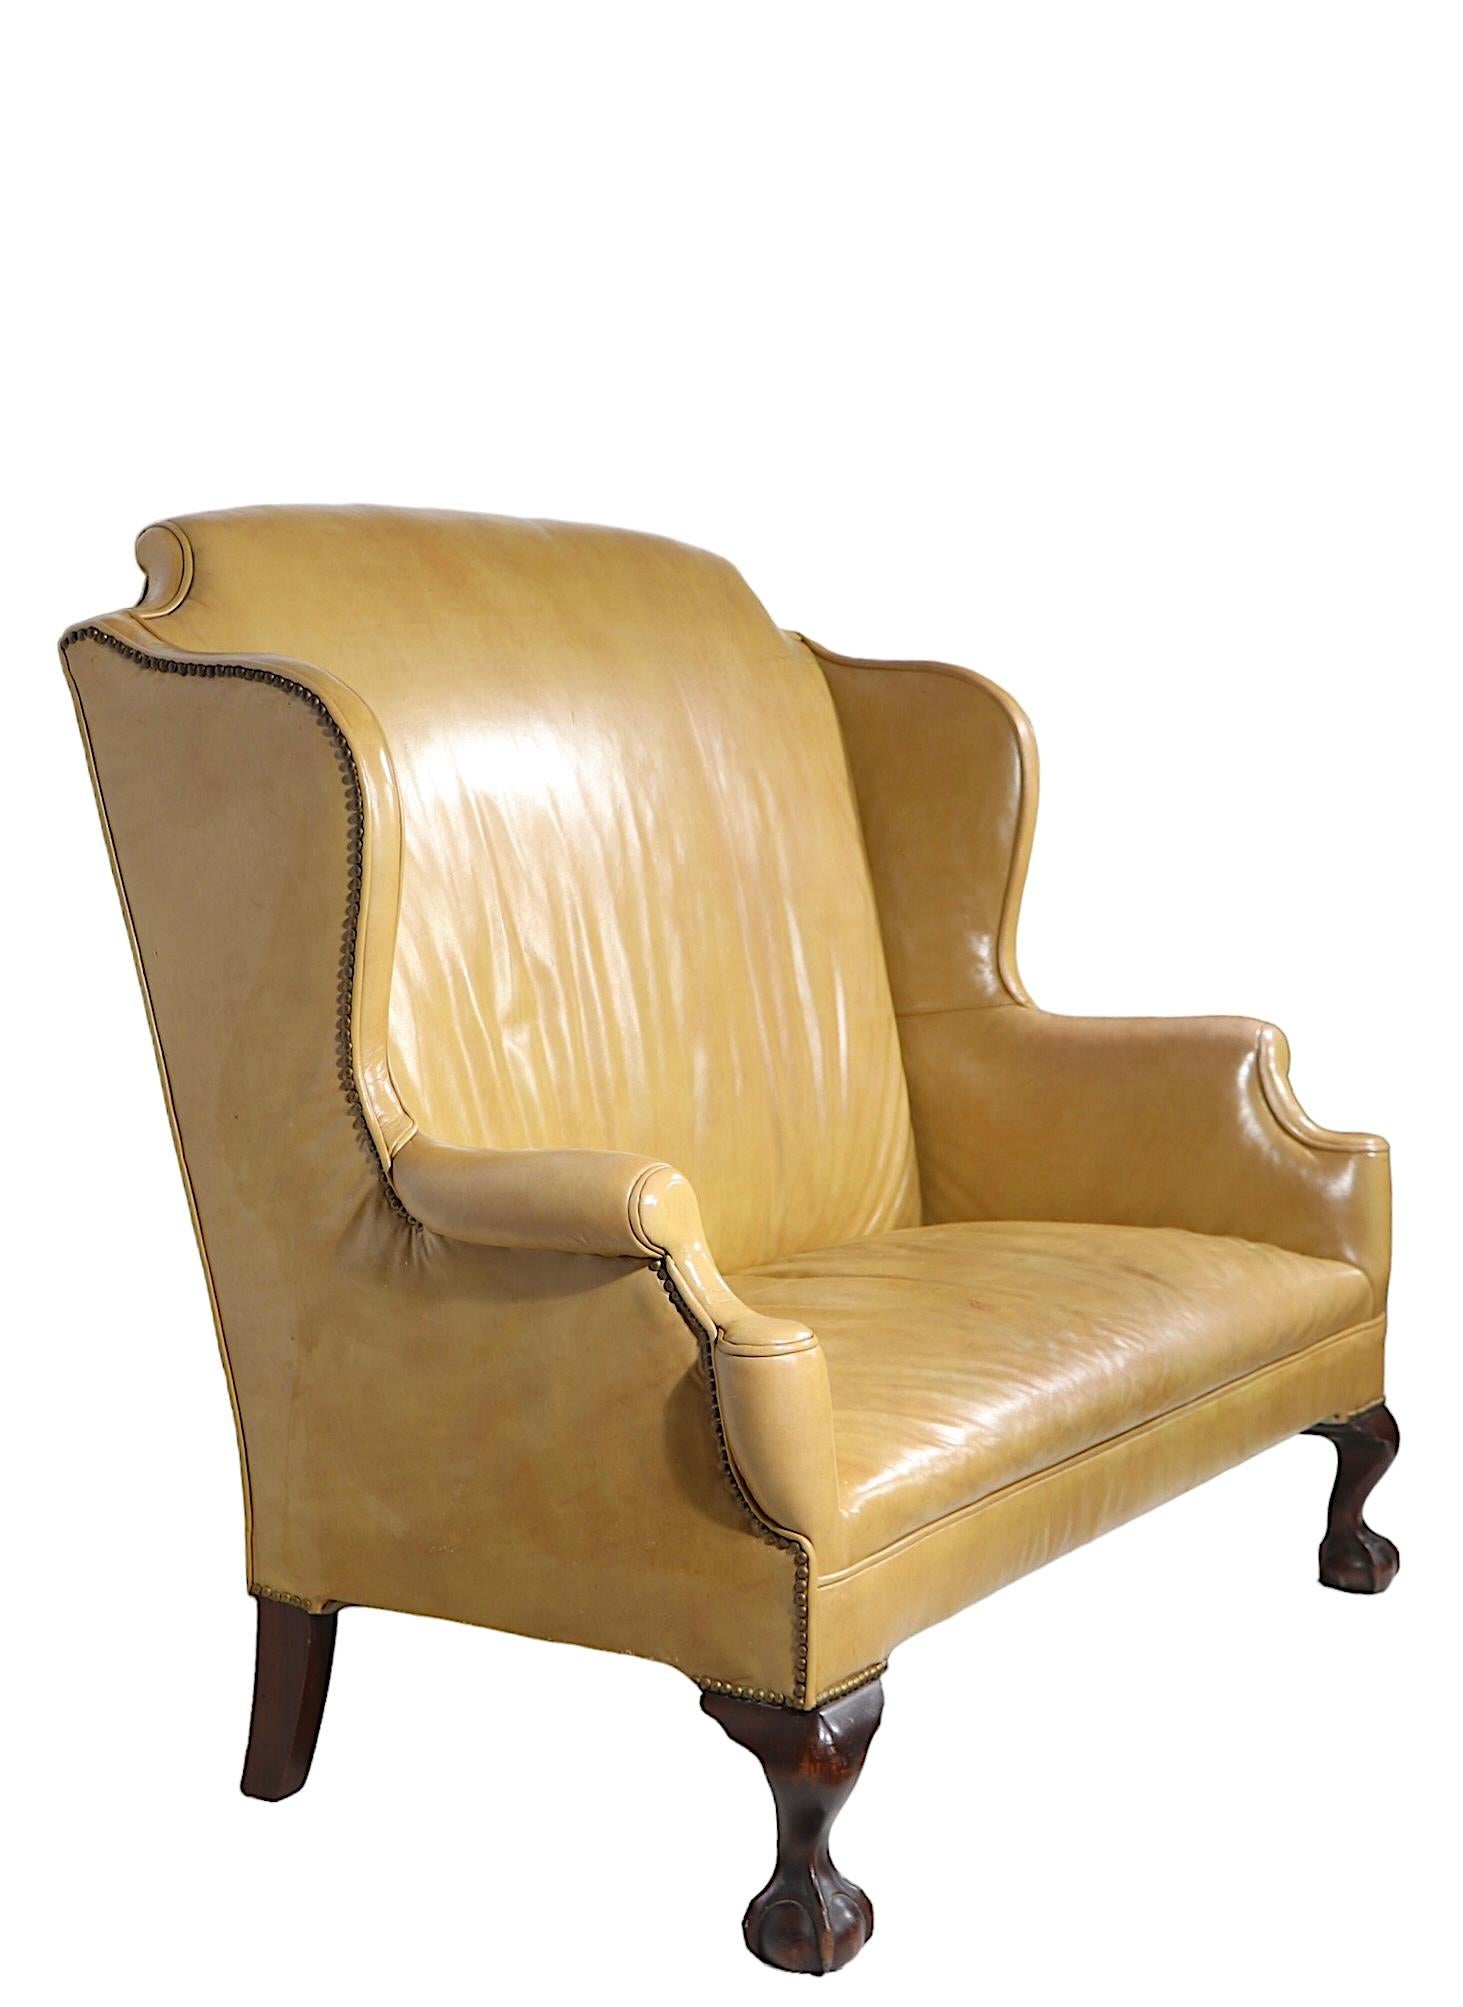 Außergewöhnliches Chippendale-Sofa, -Liegesitz, -Sofa, in Lederpolsterung mit dekorativer Nagelkopfverzierung und kühnen Kugel- und Krallenfüßen. Dieses außergewöhnliche Stück zeichnet sich durch sein elegantes, klassisches Design, seine hochwertige